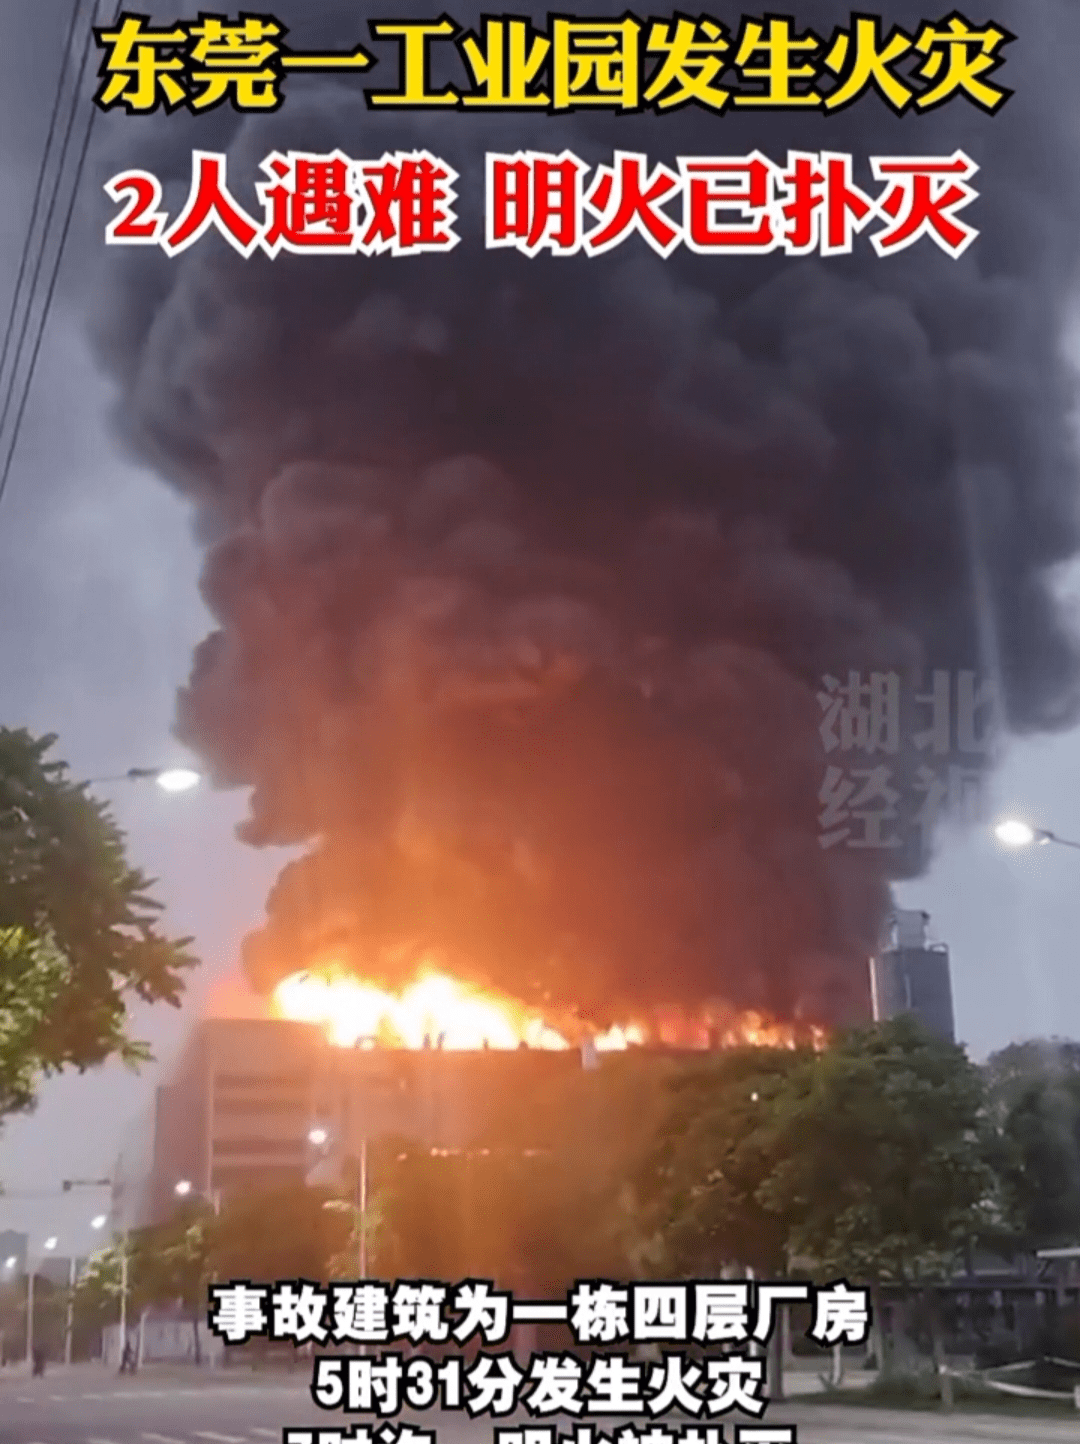 位于东莞市麻涌镇豪丰工业园一栋厂房发生火灾